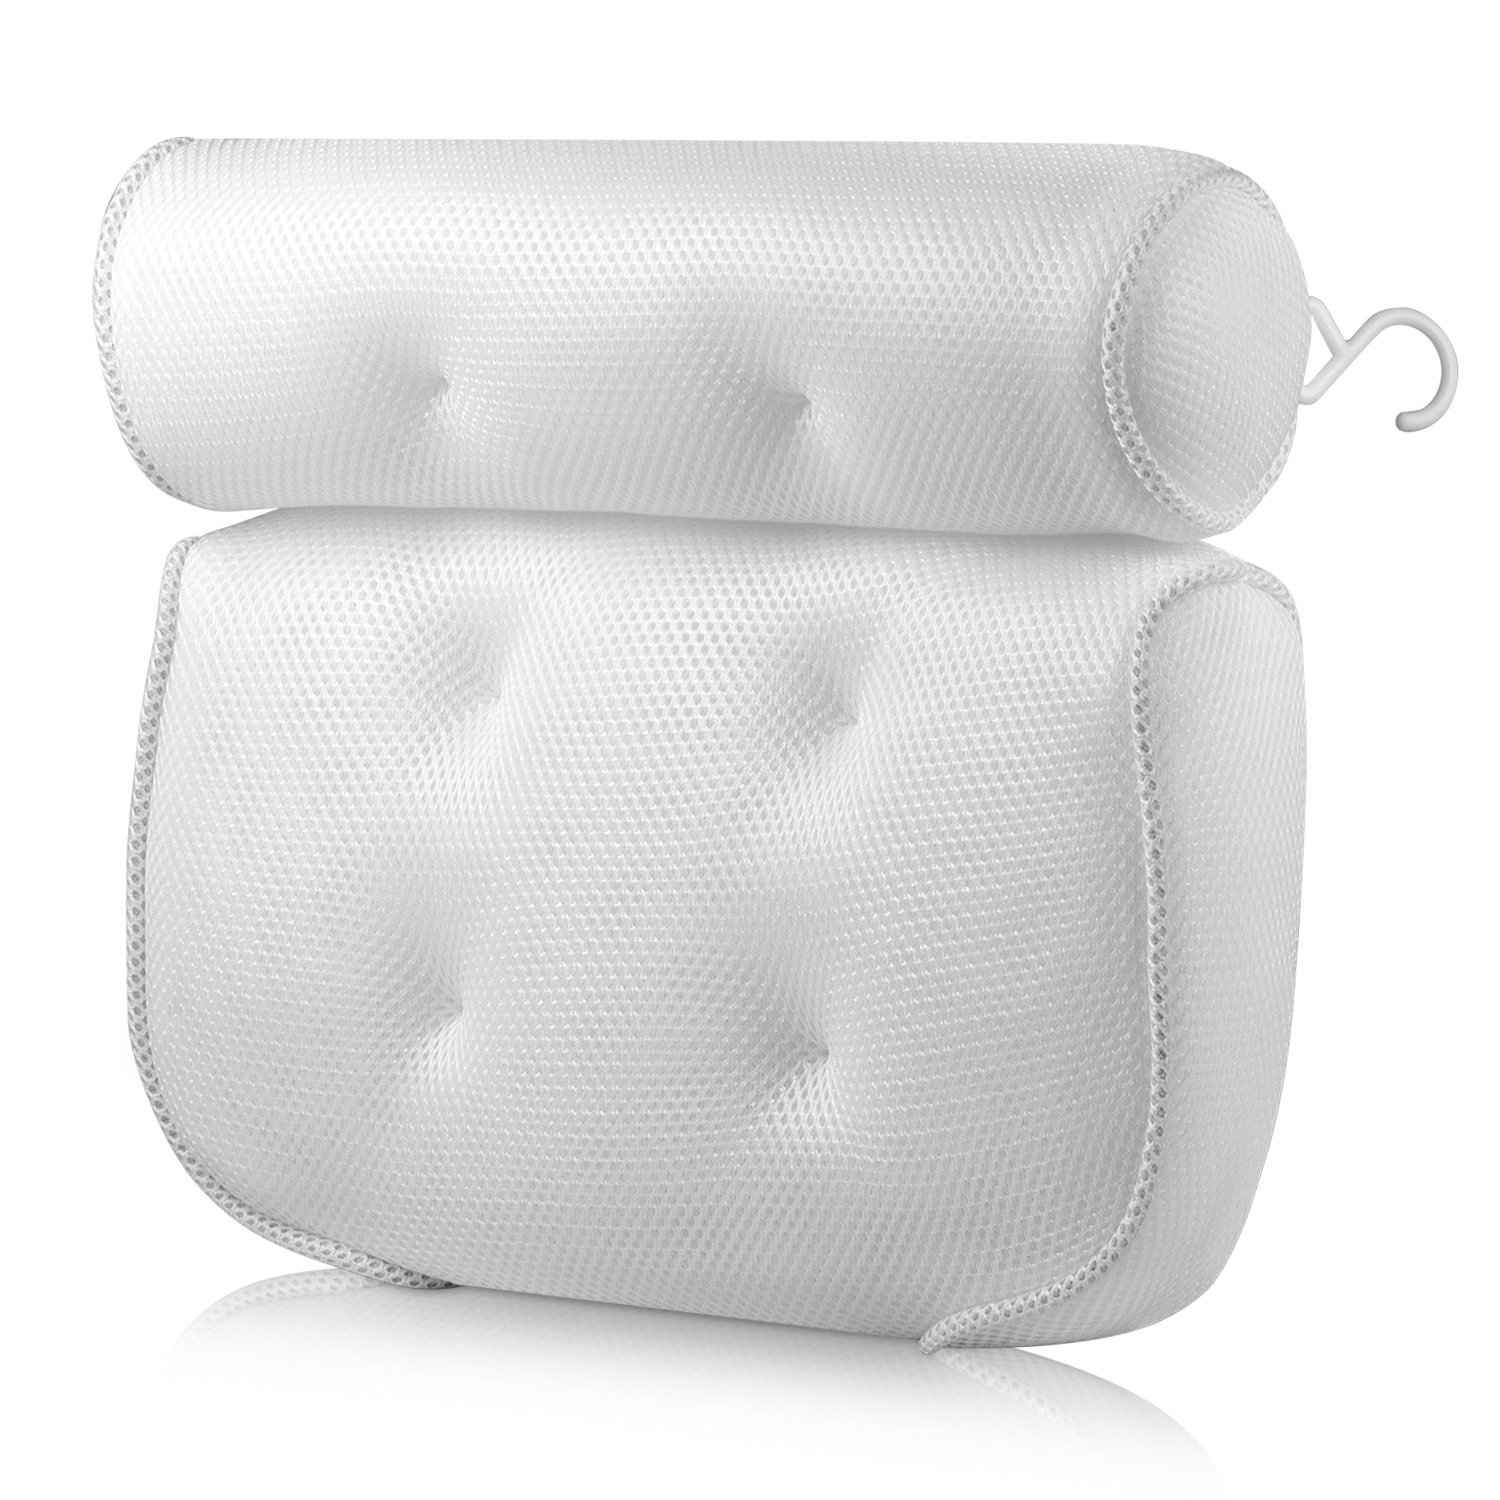 3D網佈吸盤枕頭 浴室枕頭 浴缸枕頭吸盤靠枕機洗水洗坐墊